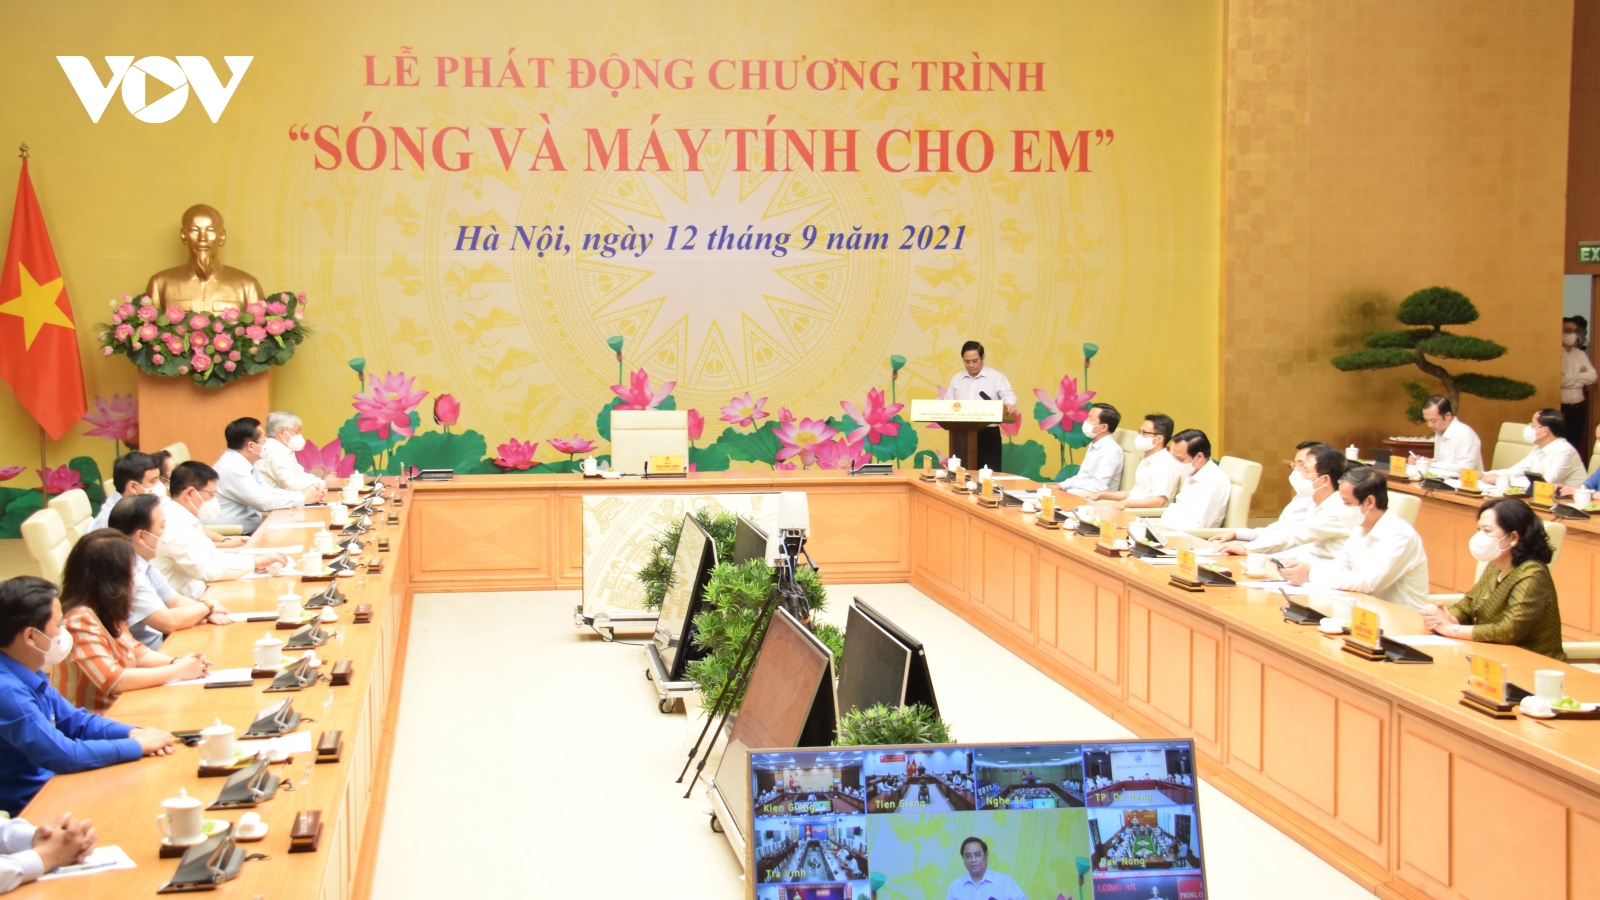 Bộ trưởng Nguyễn Mạnh Hùng: "Sóng và máy tính cho em" cũng là để xây dựng xã hội số